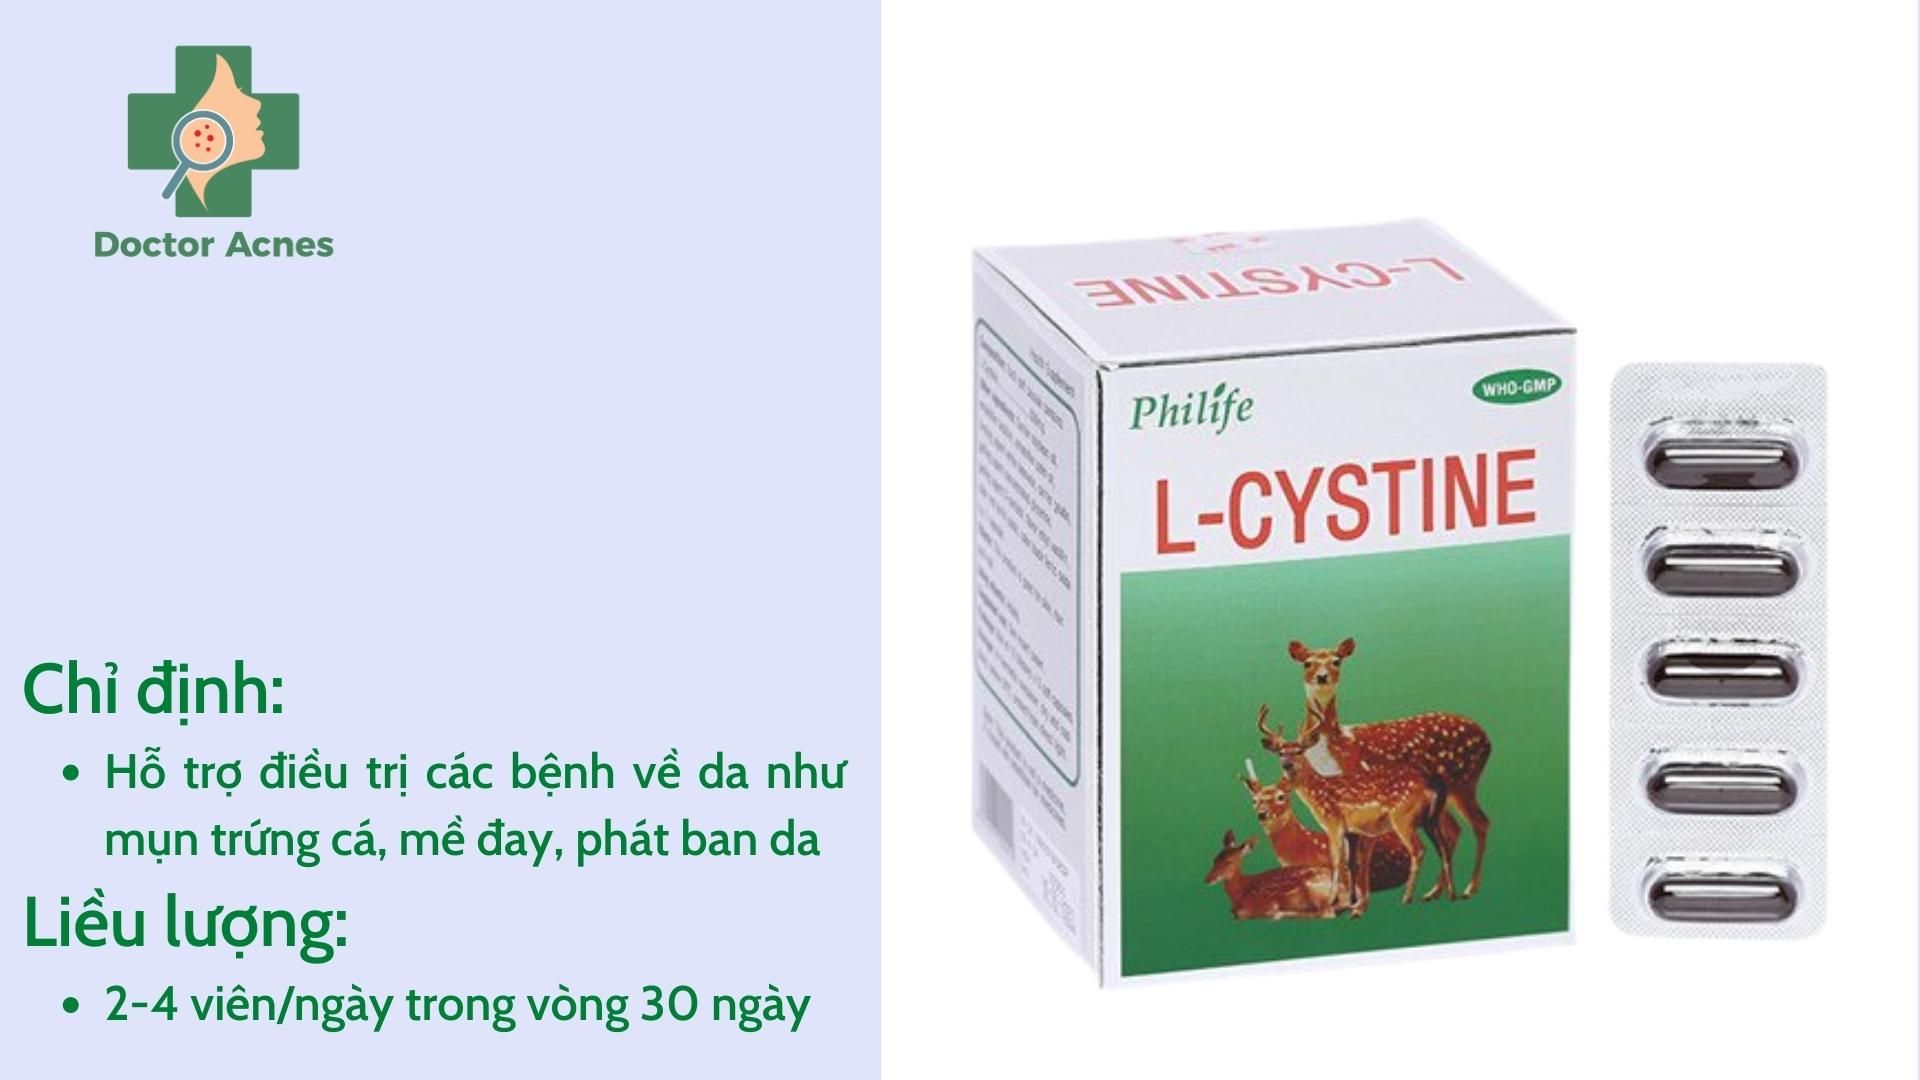 Thực phẩm bảo vệ sức khỏe hỗ trợ trị mụn L-cystine - Doctor Acnes